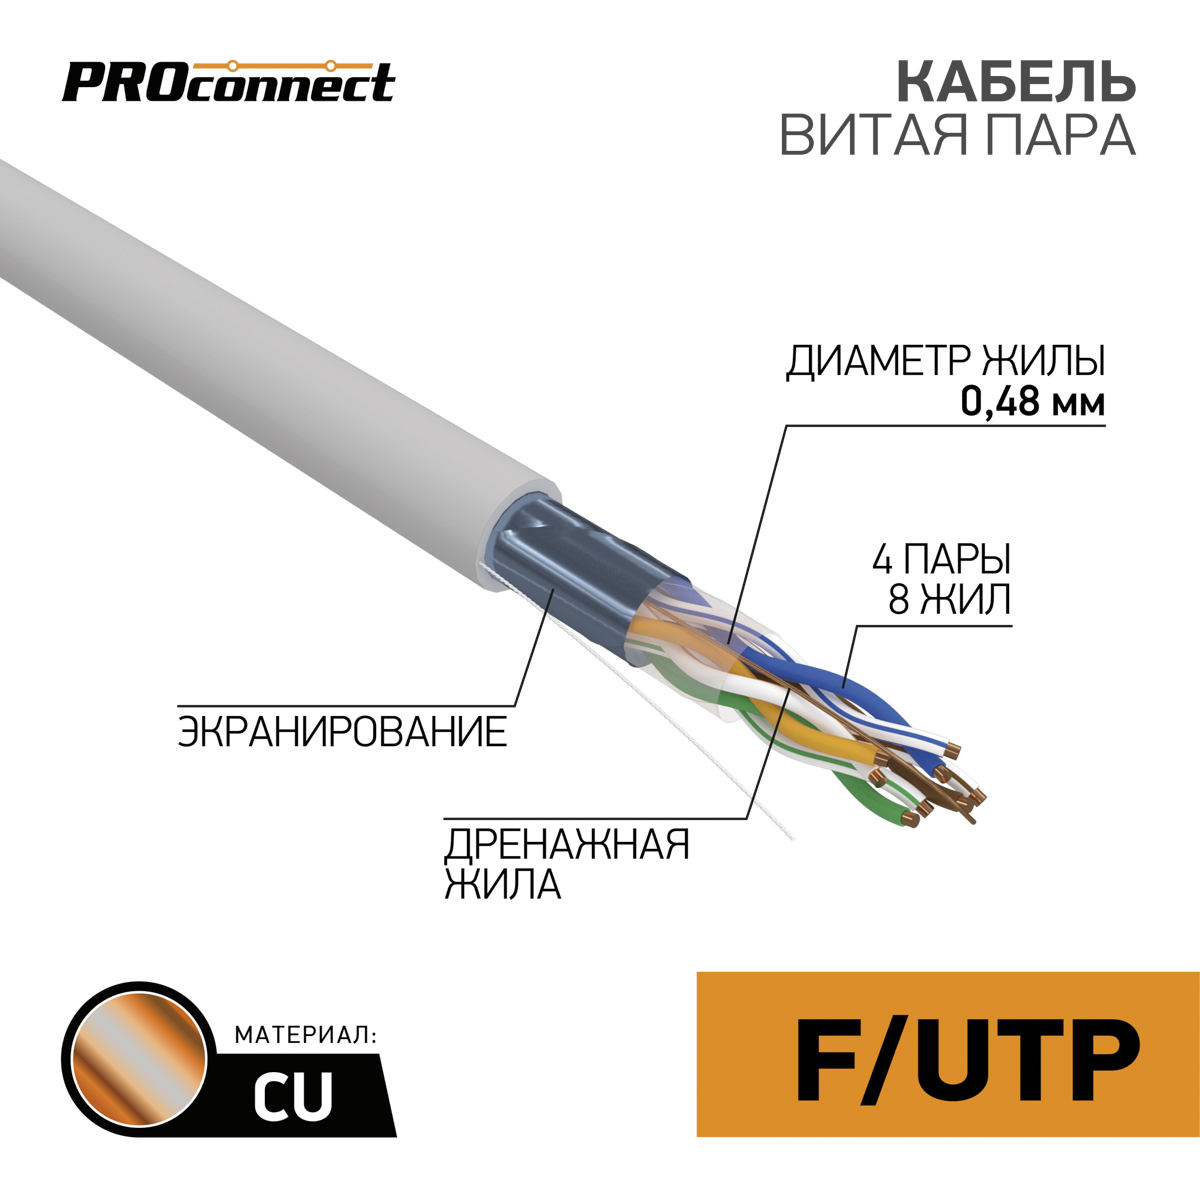 Кабель FTP 4 x 2 x 0,48 мм, cat 5e, 1 м.,  PROCONNECT 